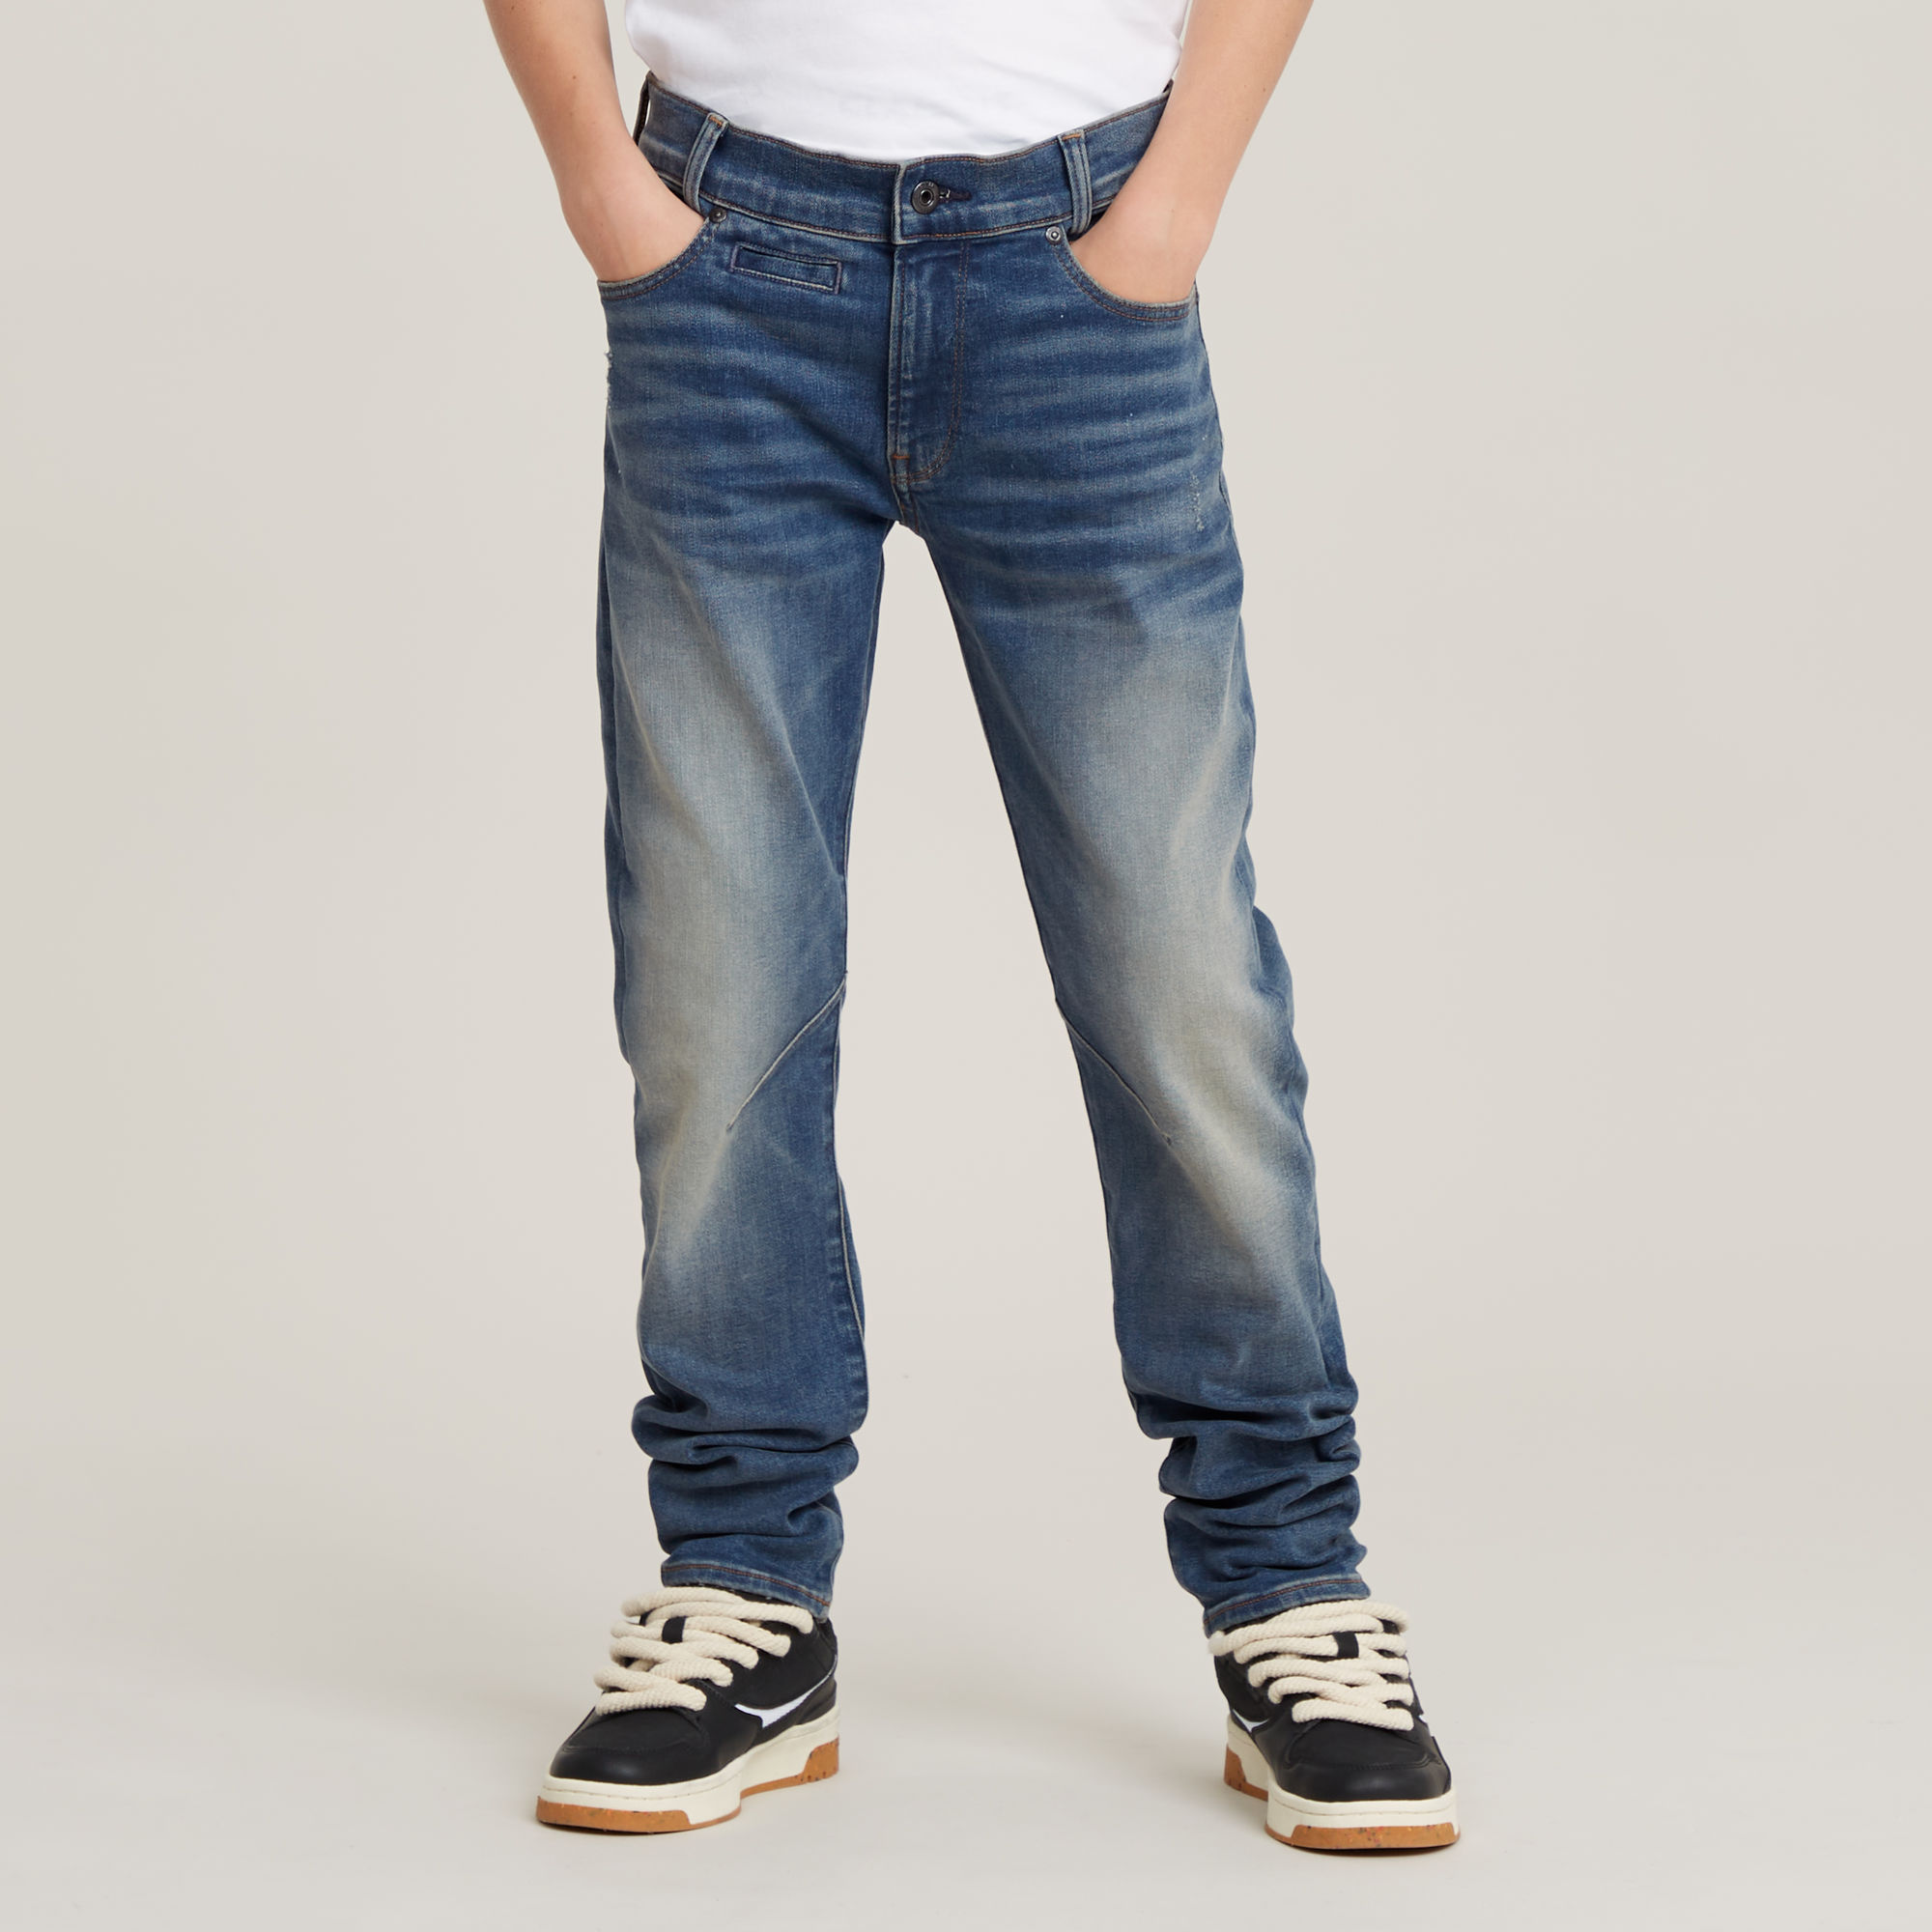 G-Star Raw D-STAQ regular fit jeans sun faded indigo Blauw Jongens Stretchdenim 164